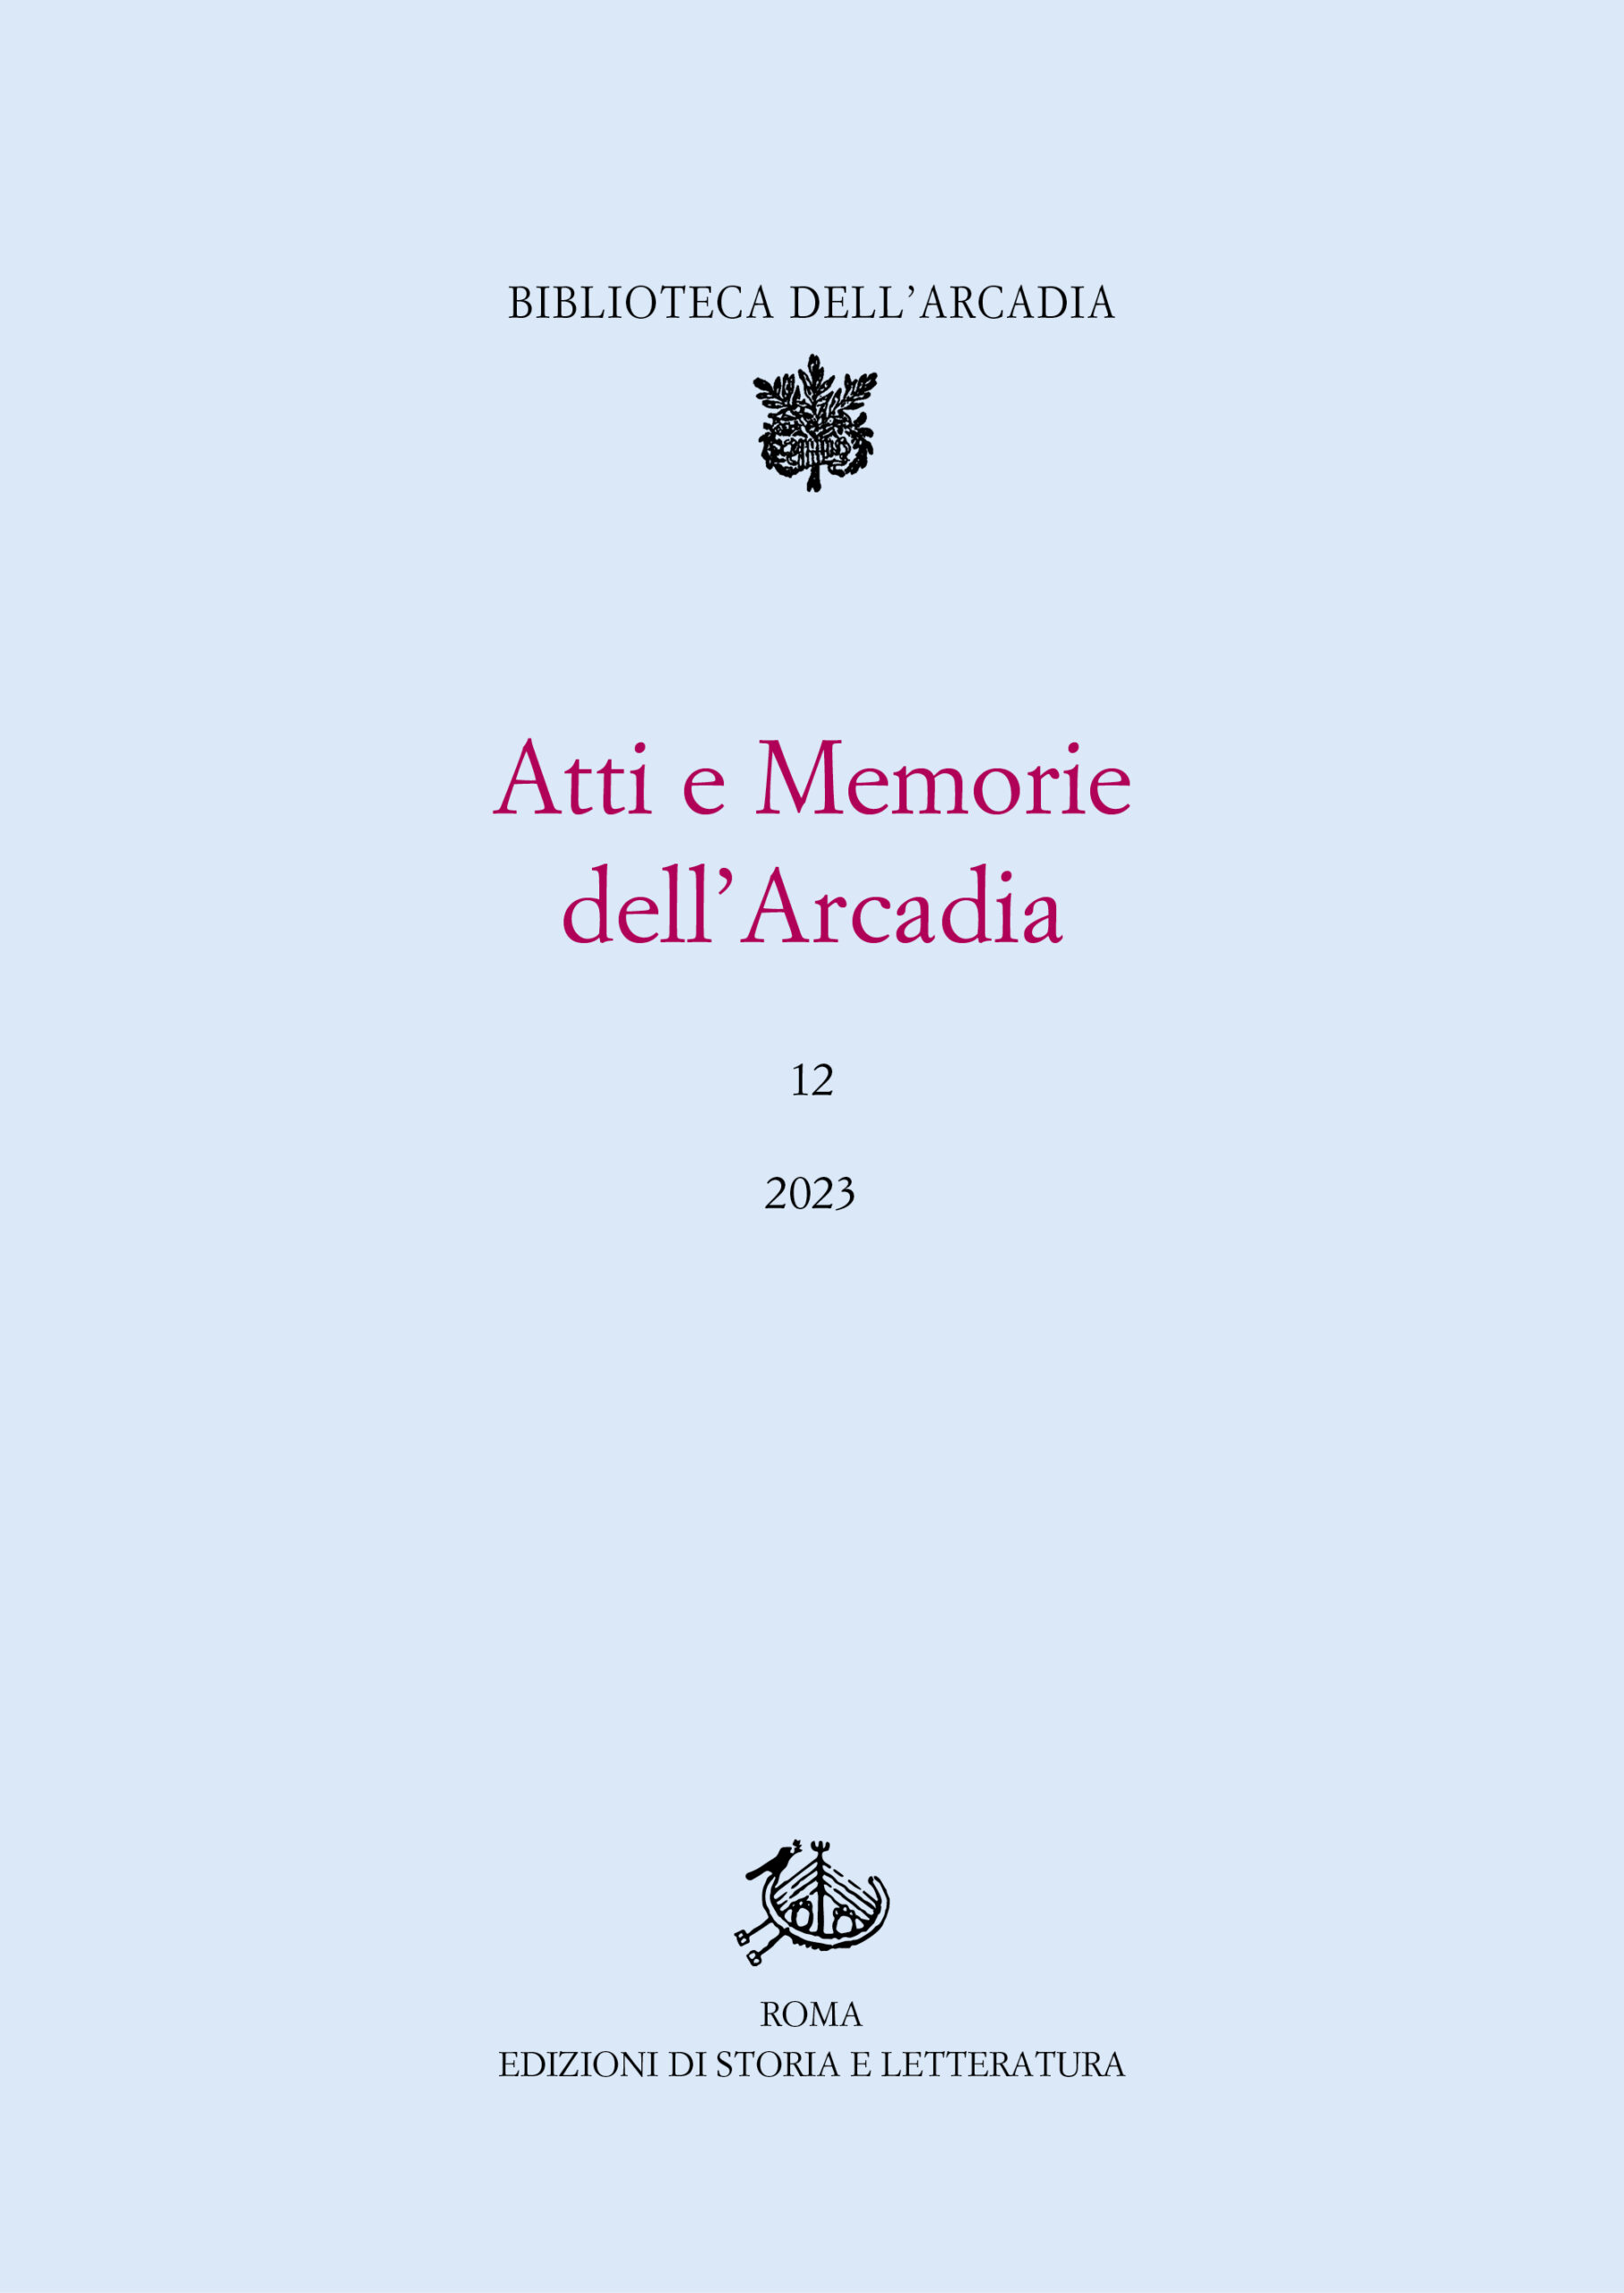 Copertina del 12° volume della rivista arcadica "Atti e Memorie dell'Arcadia"